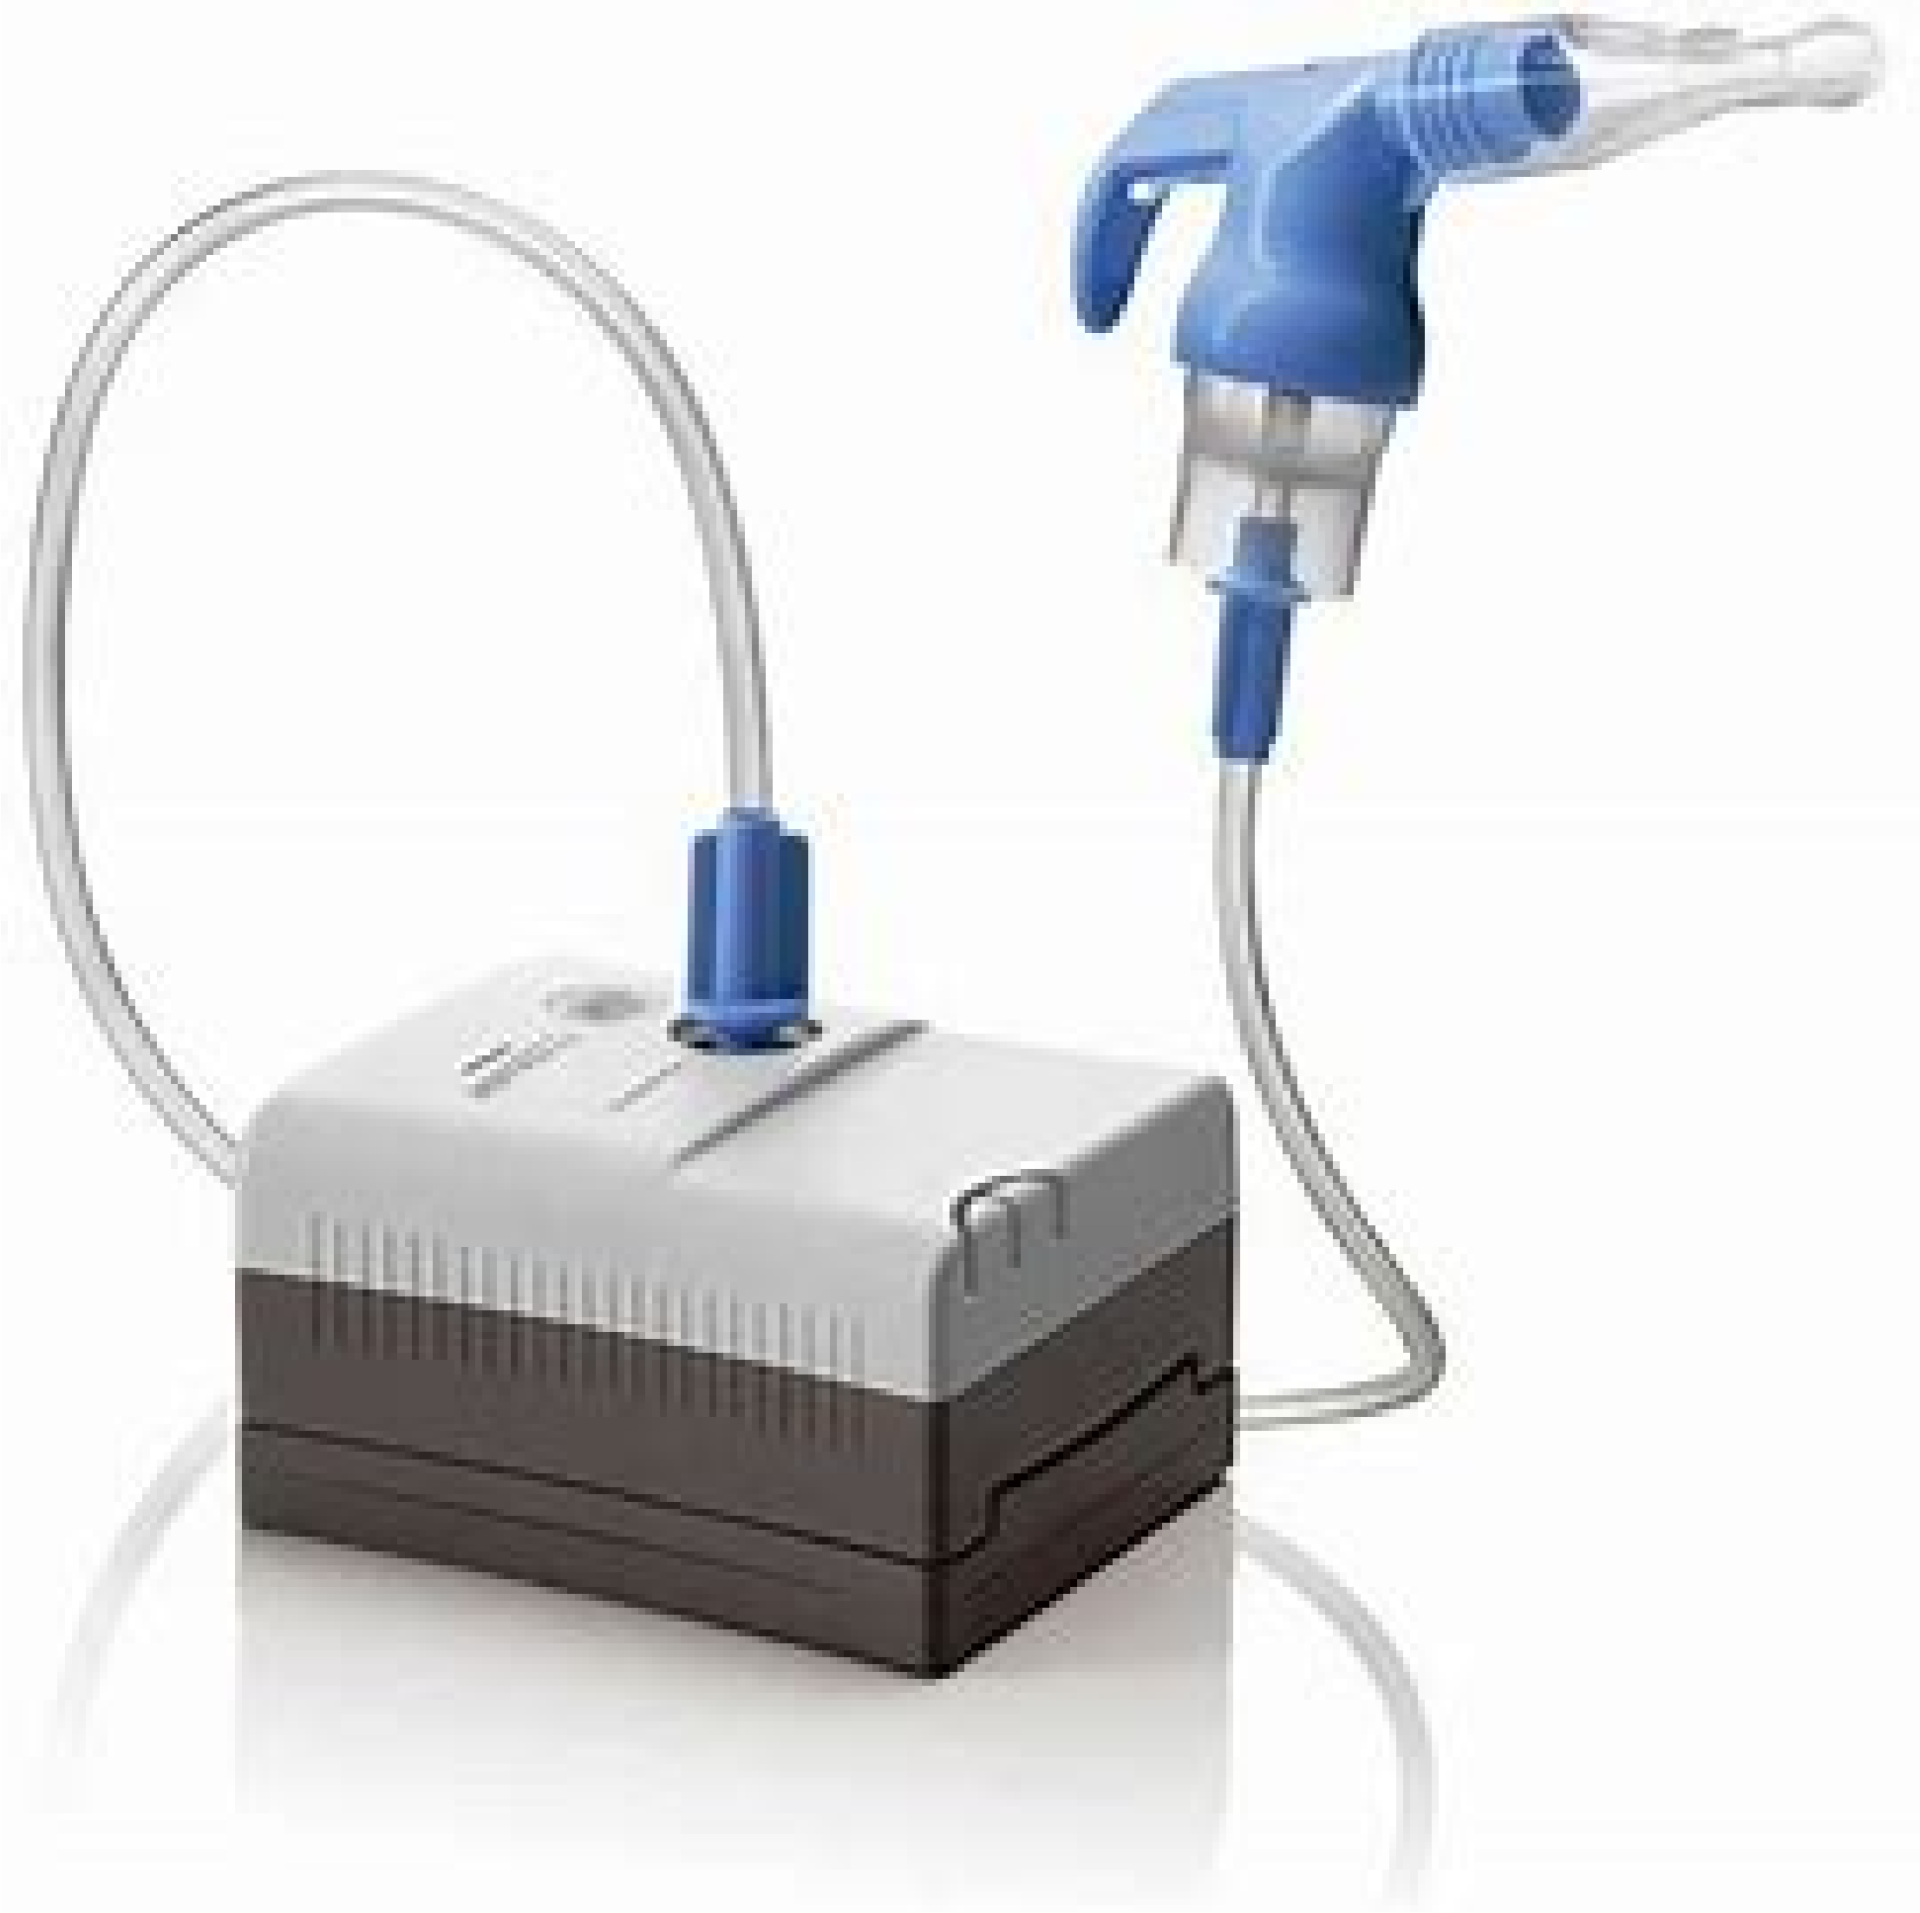 Respirator Nebulizer equipment